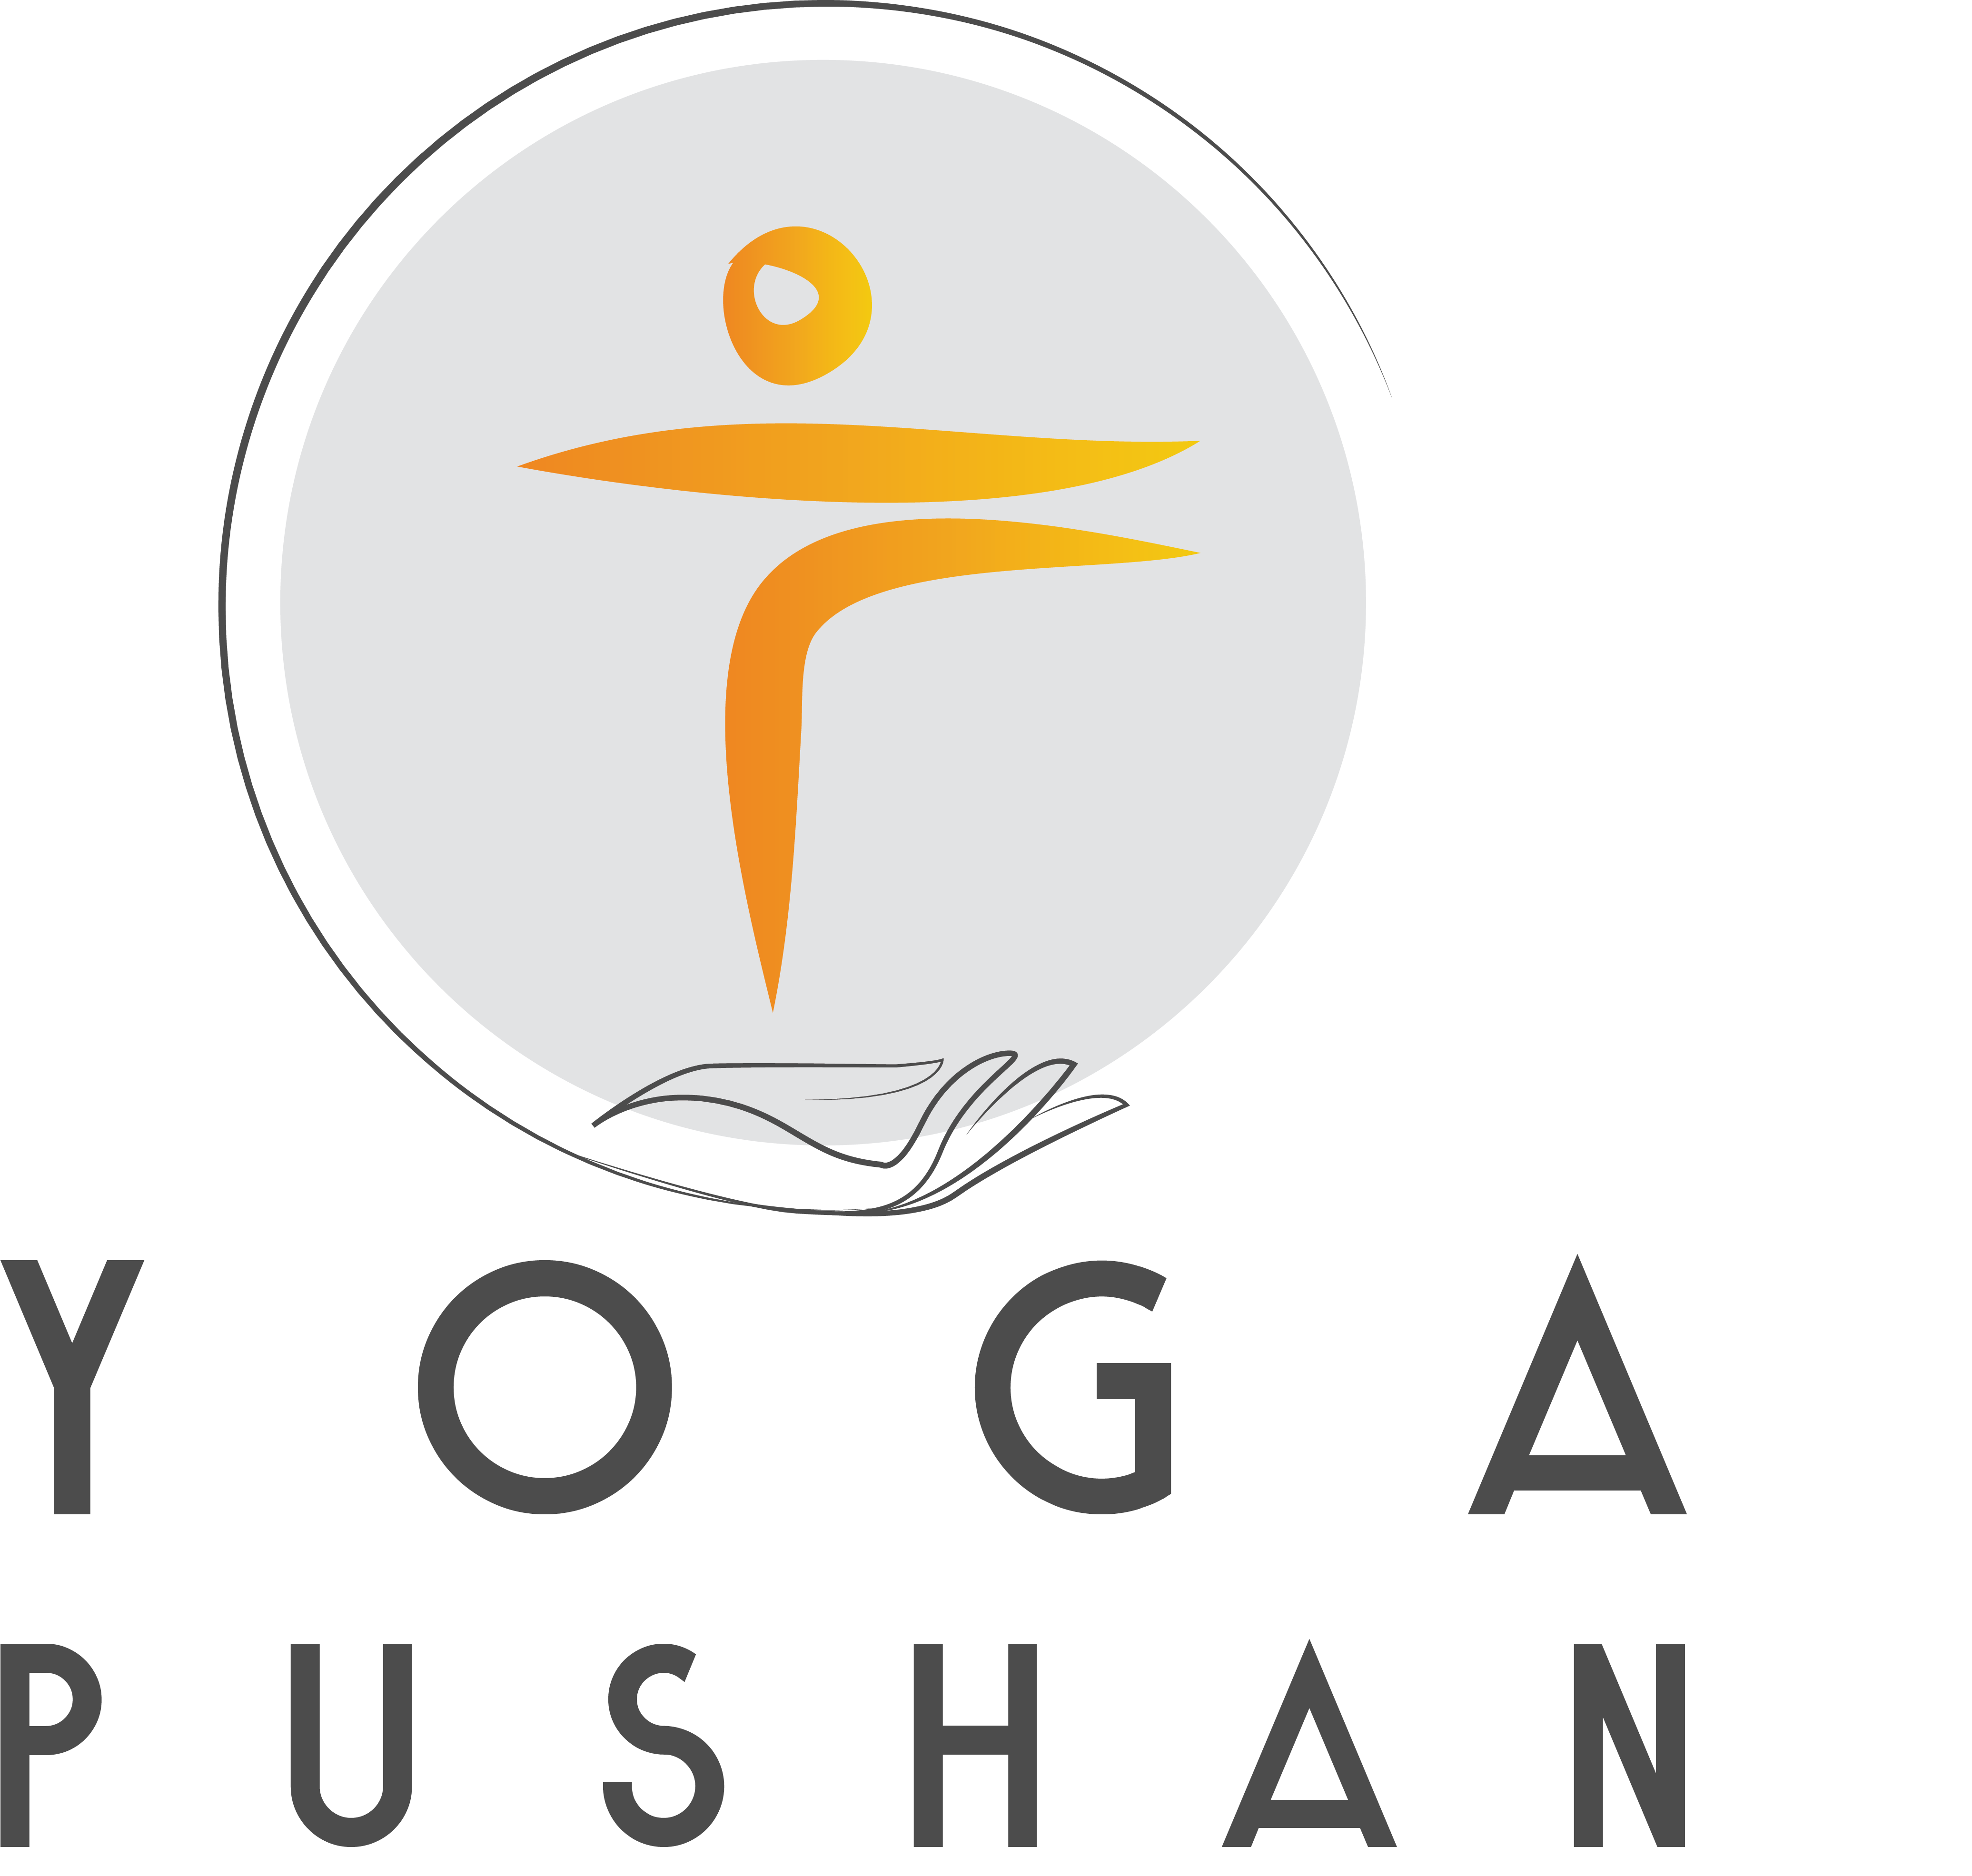 YogaPushan